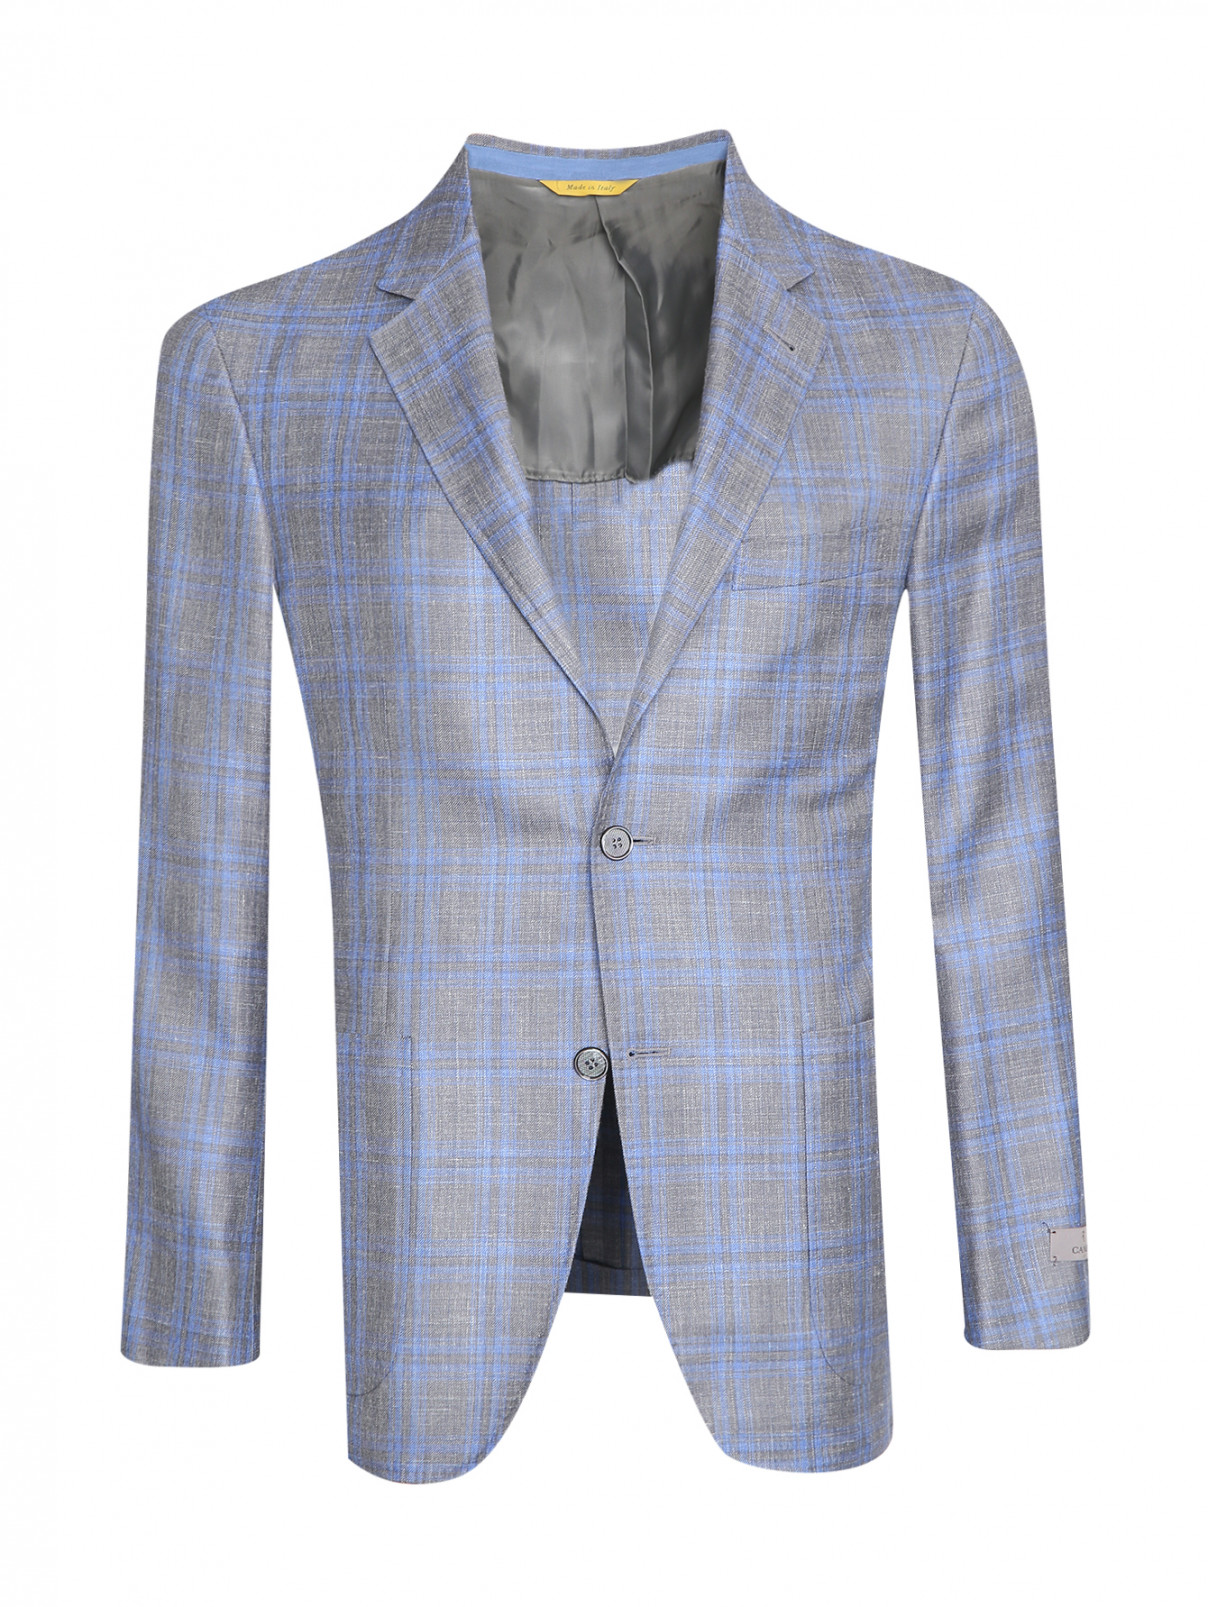 Пиджак из шерсти шелка и льна с карманами Canali  –  Общий вид  – Цвет:  Серый